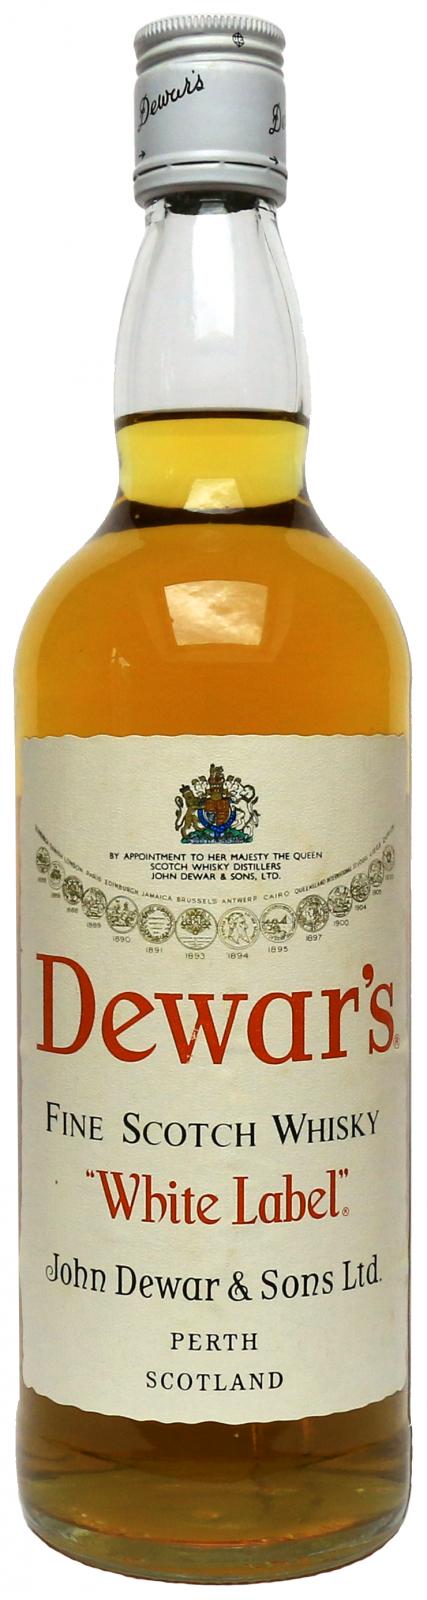 Dewar's White Label Fine Scotch Whisky 40% 700ml